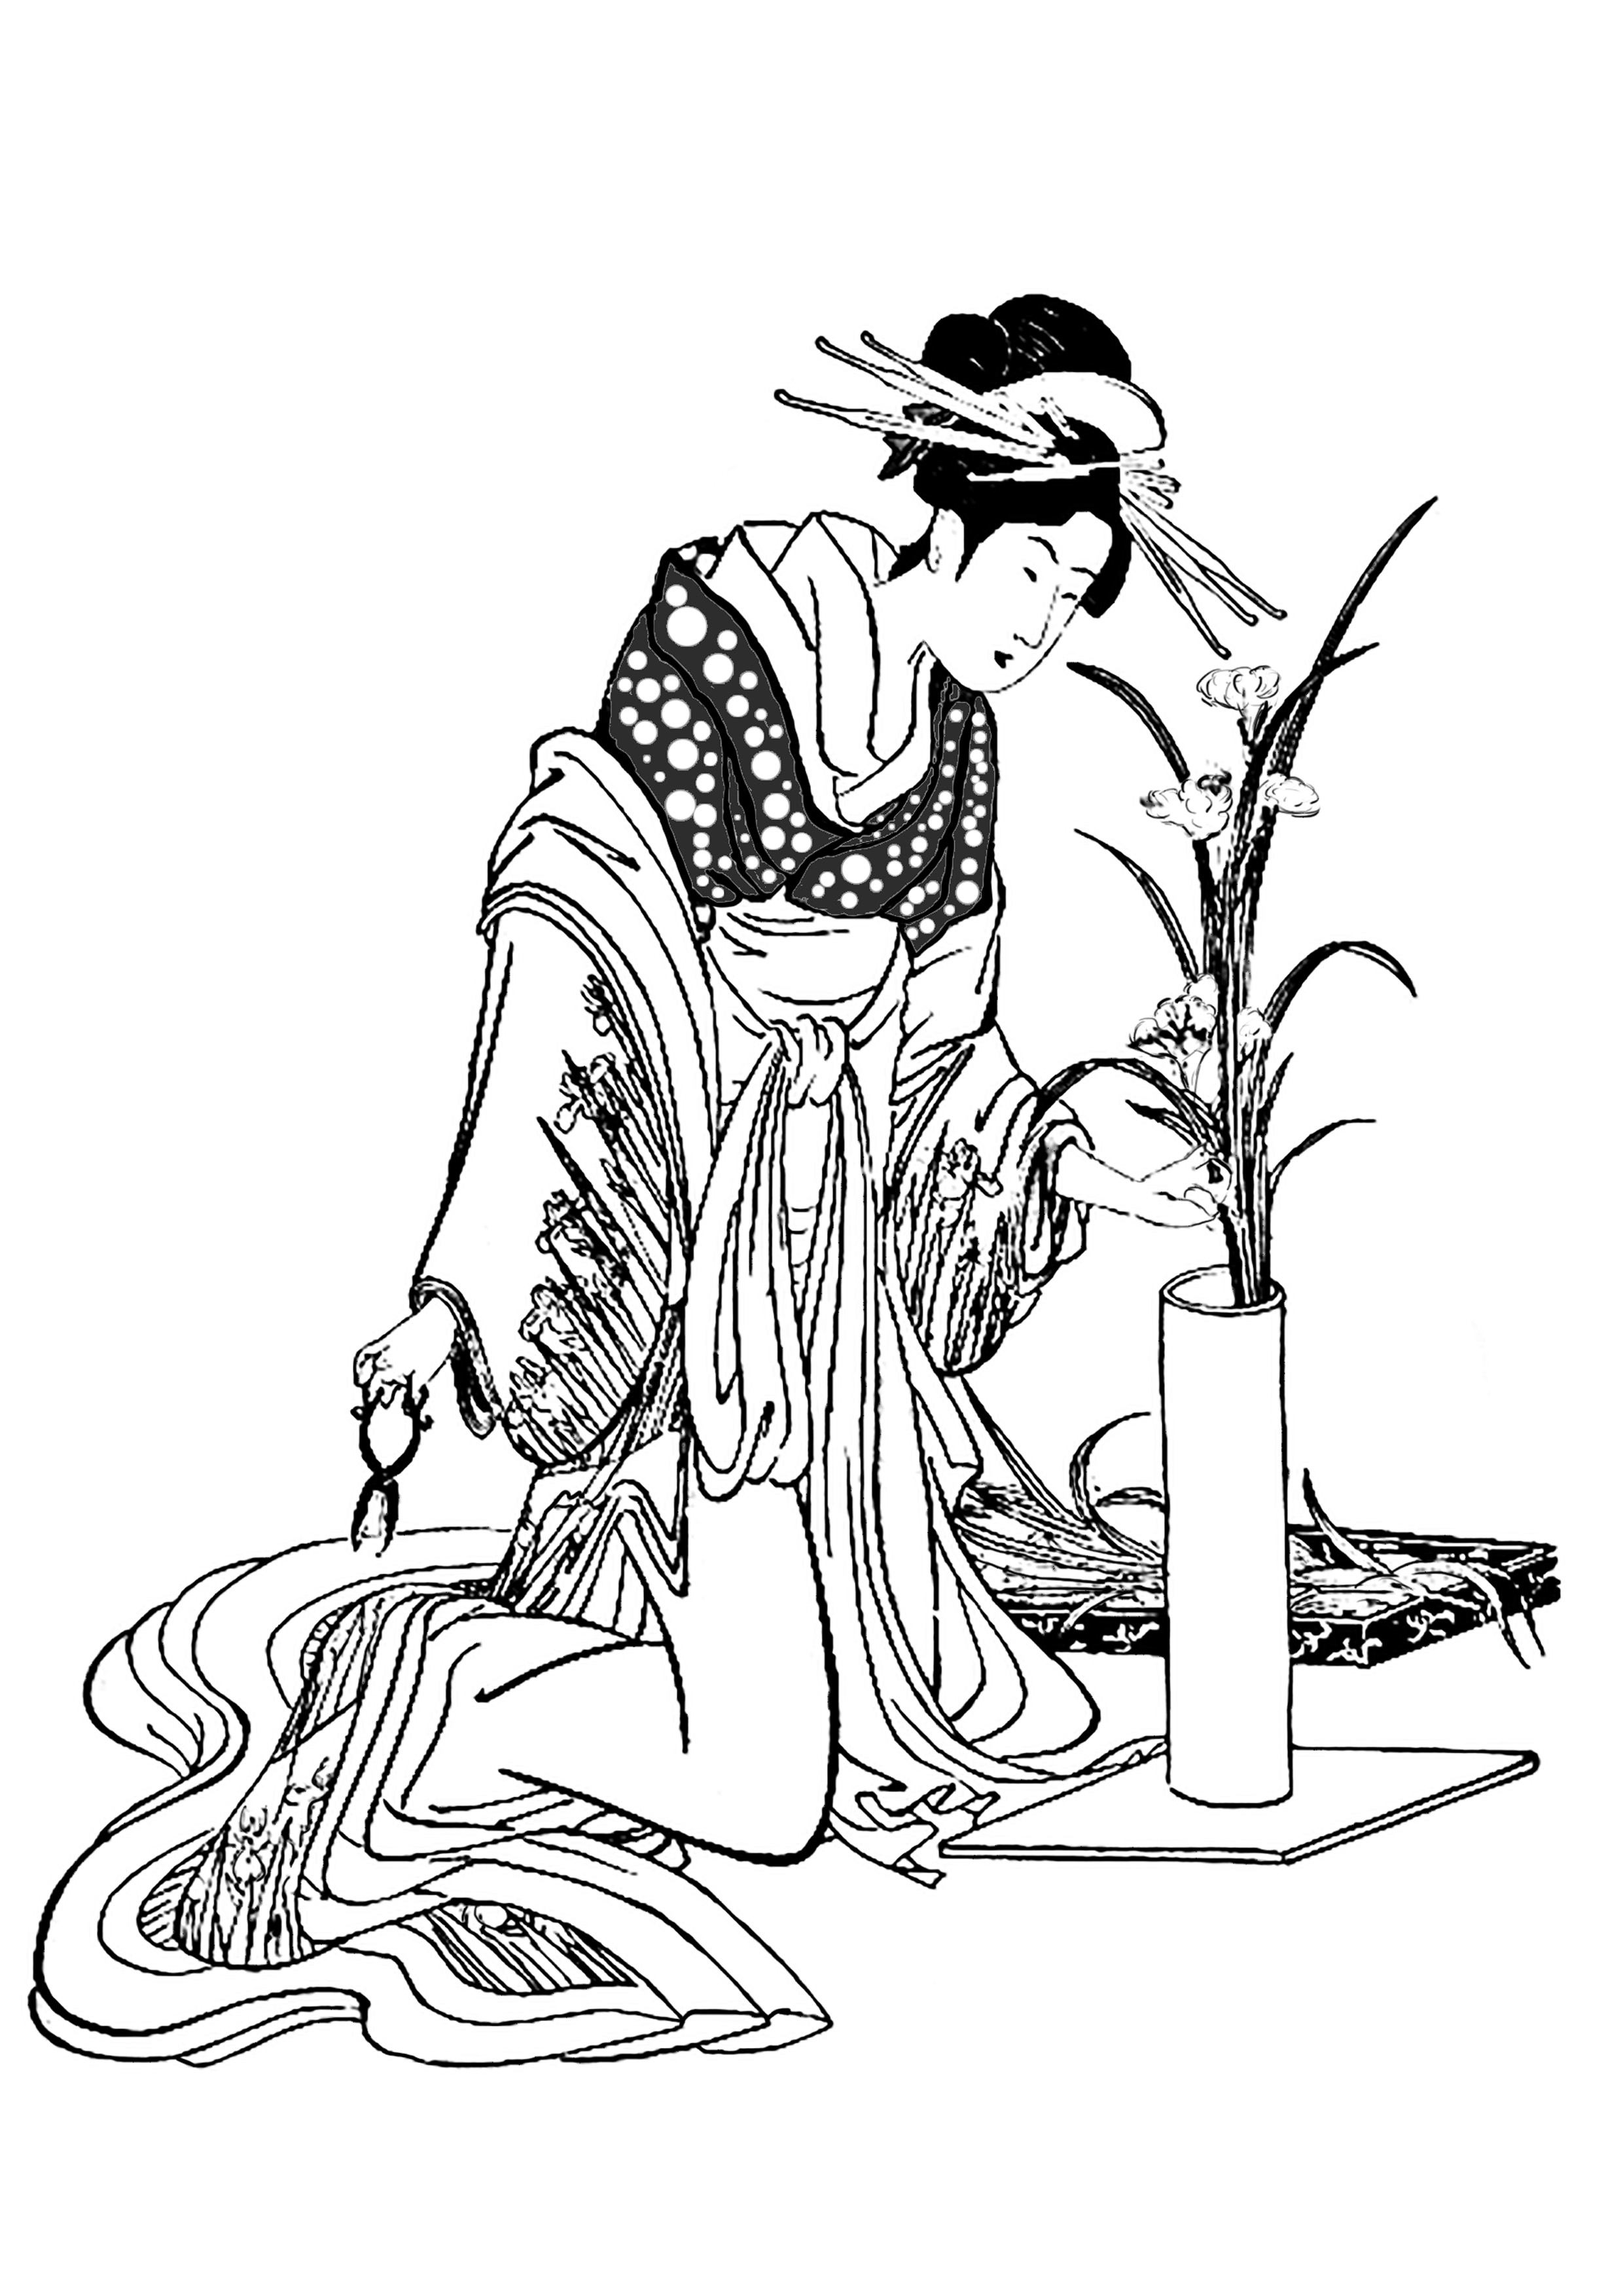 Coloriage adulte pour adulte japon tenue traditionnelle herboriste gratuit a imprimer Imprimer